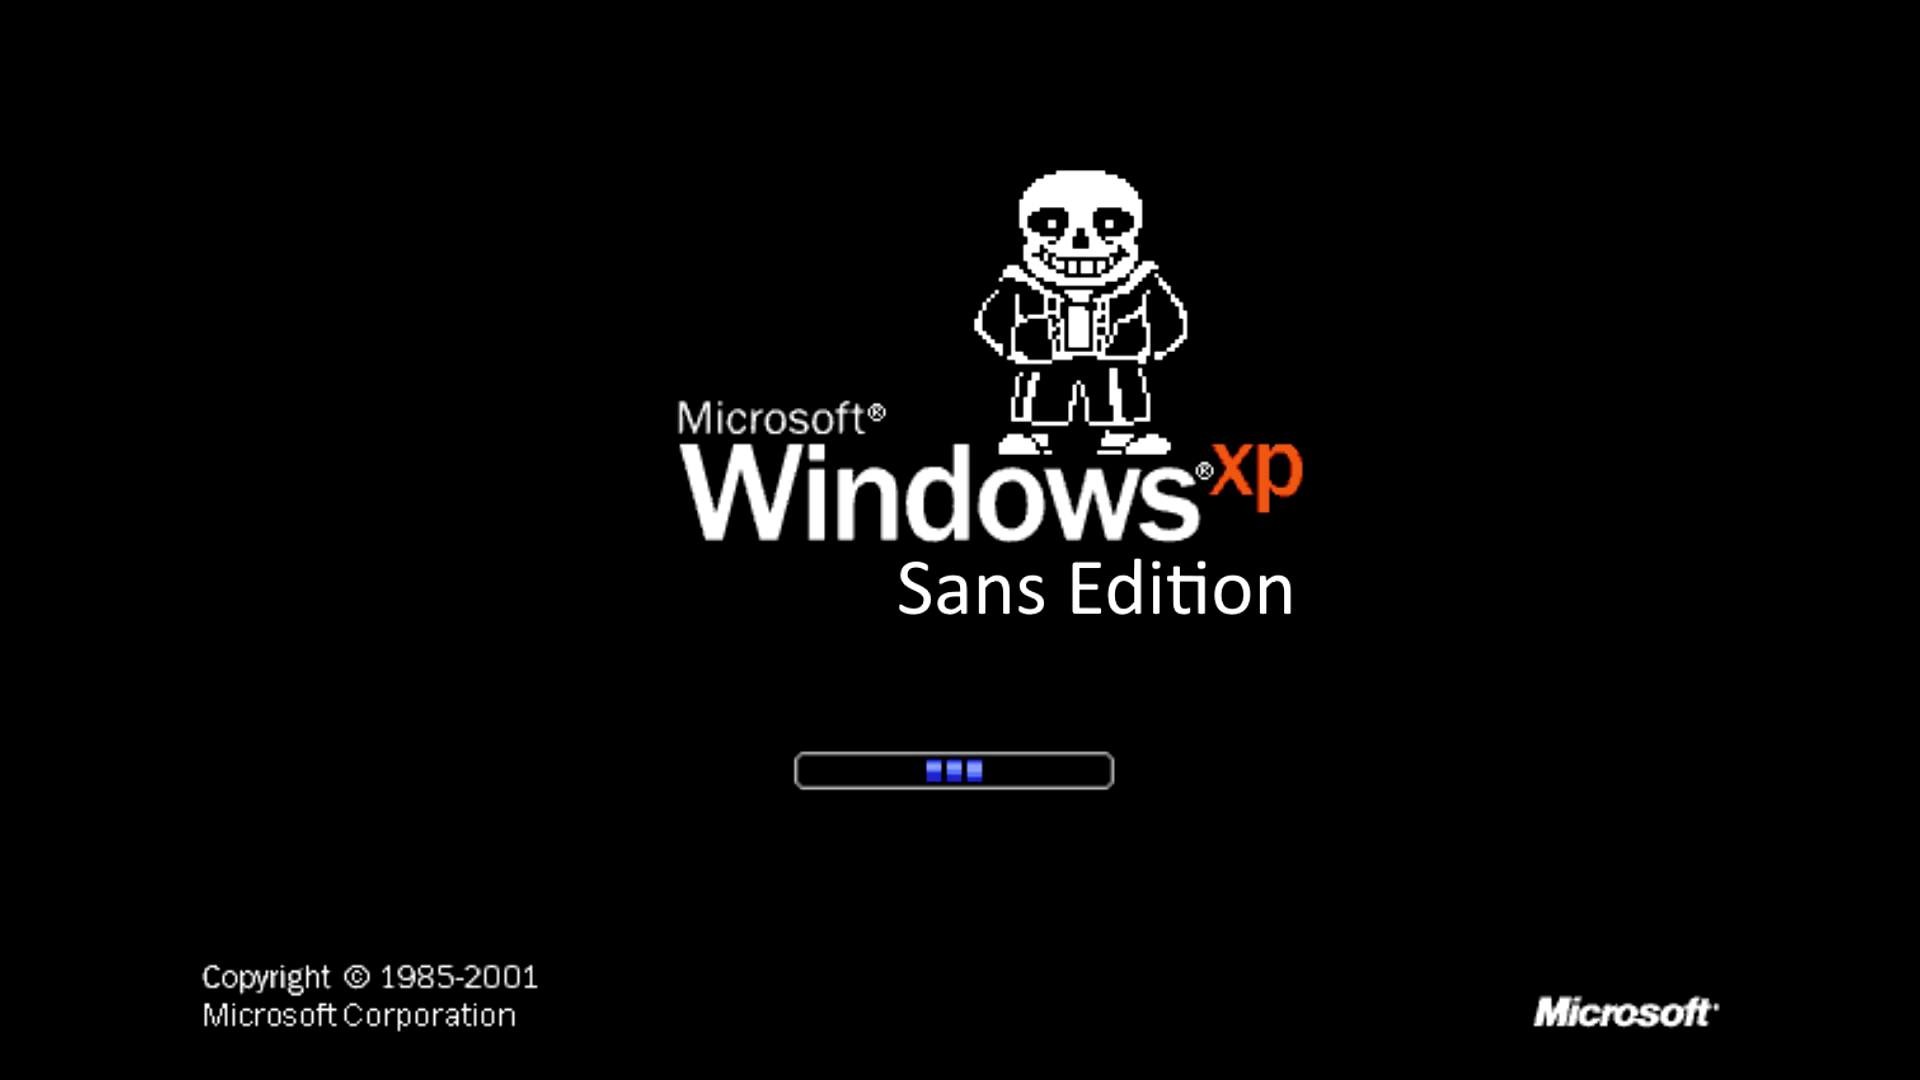 1920x1080 Undertale - Megalovania [Windows XP Remix]